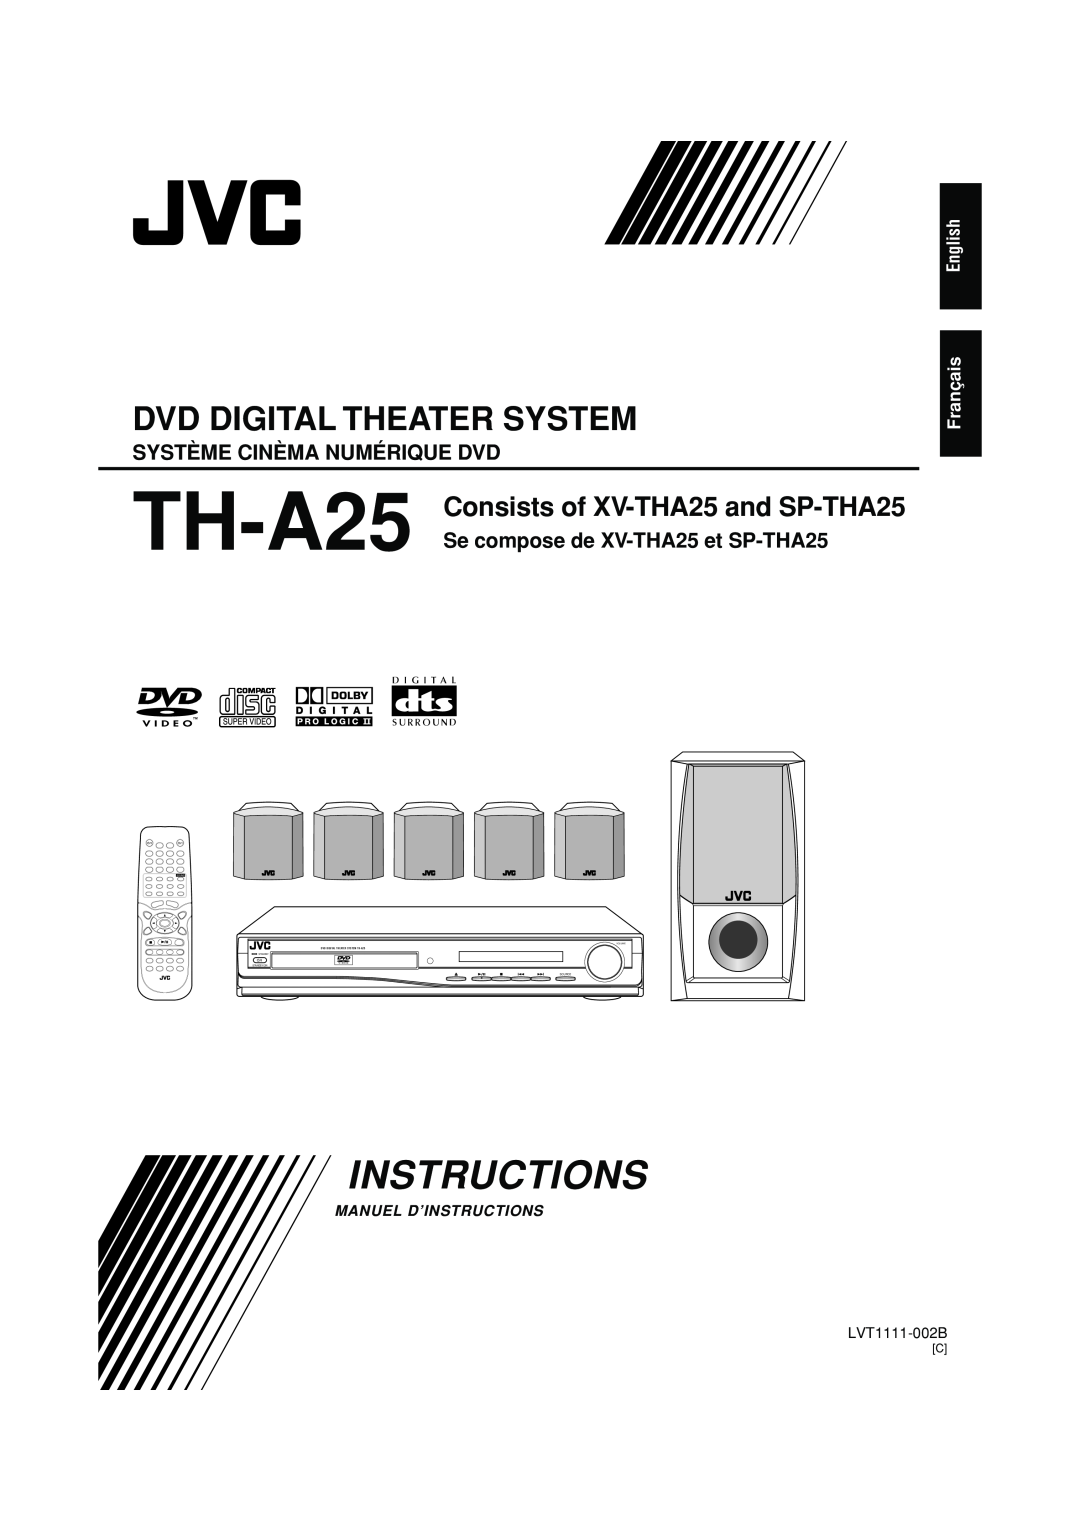 JVC TH-A25 manual Système Cinèma Numérique Dvd, Se compose de XV-THA25et SP-THA25, Instructions, Dvd Digital Theater System 